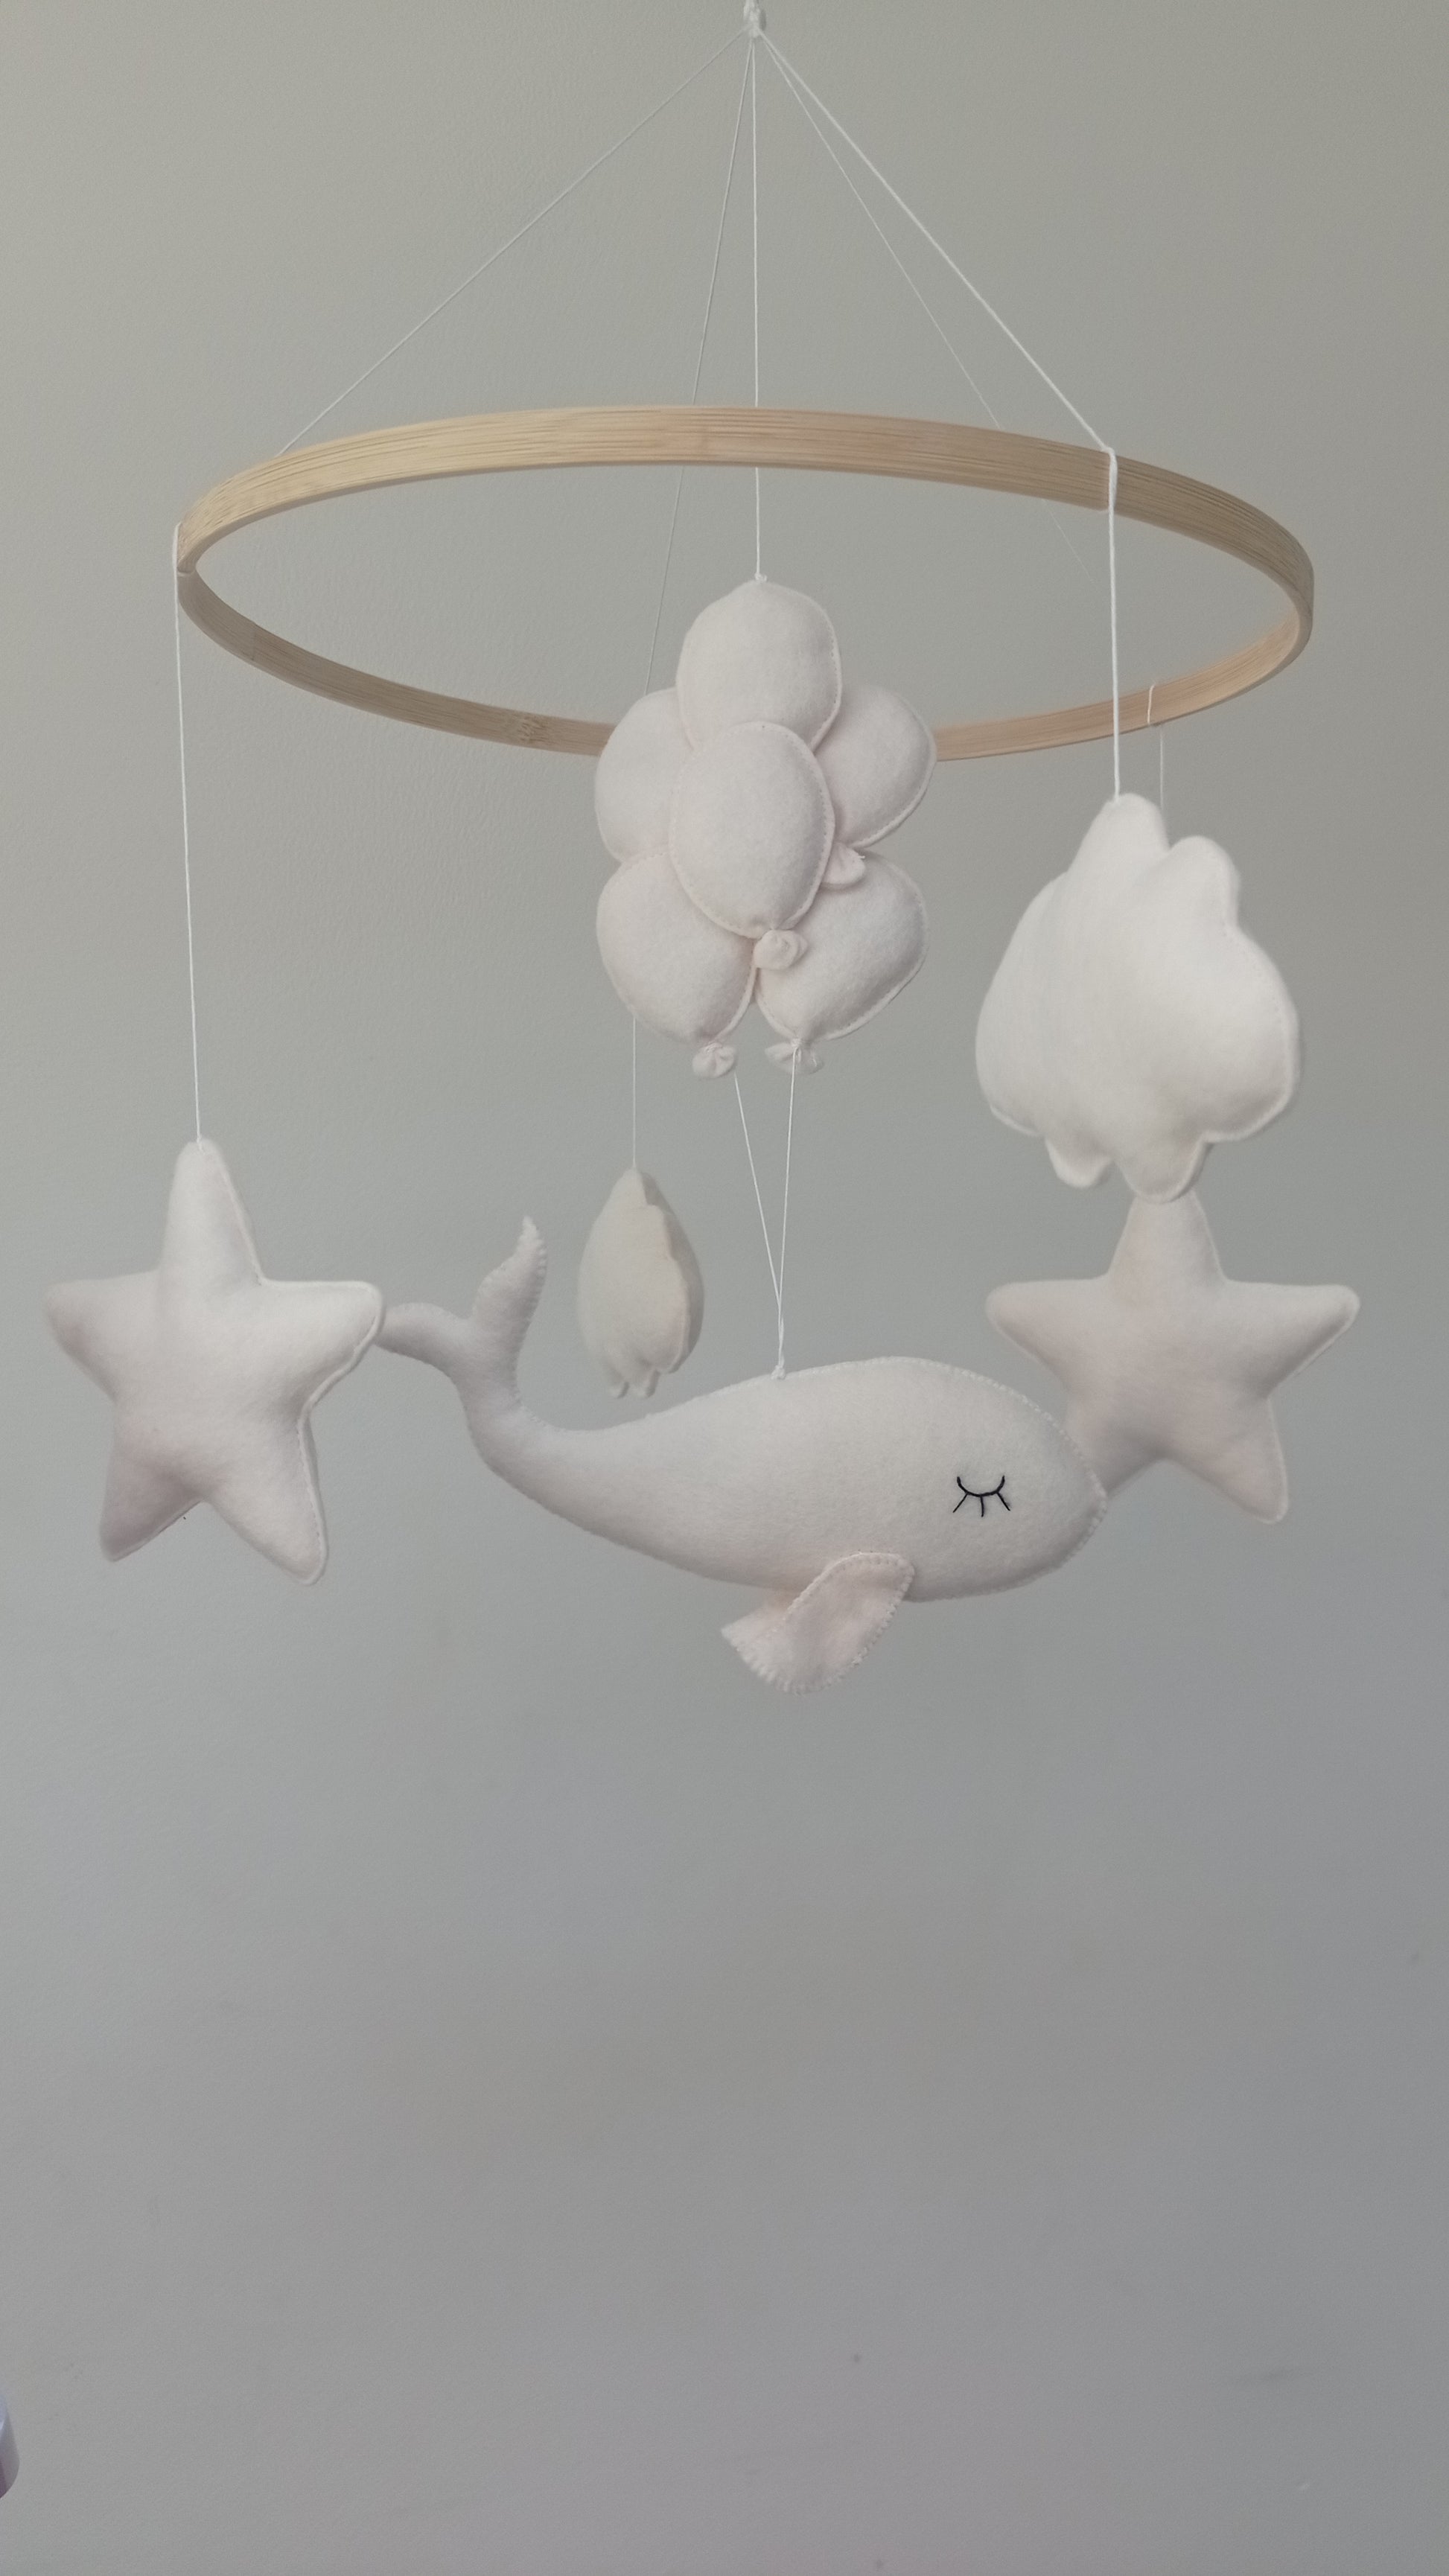 Mobile bébé baleine fait main en feutrine pour décoration de chambre.